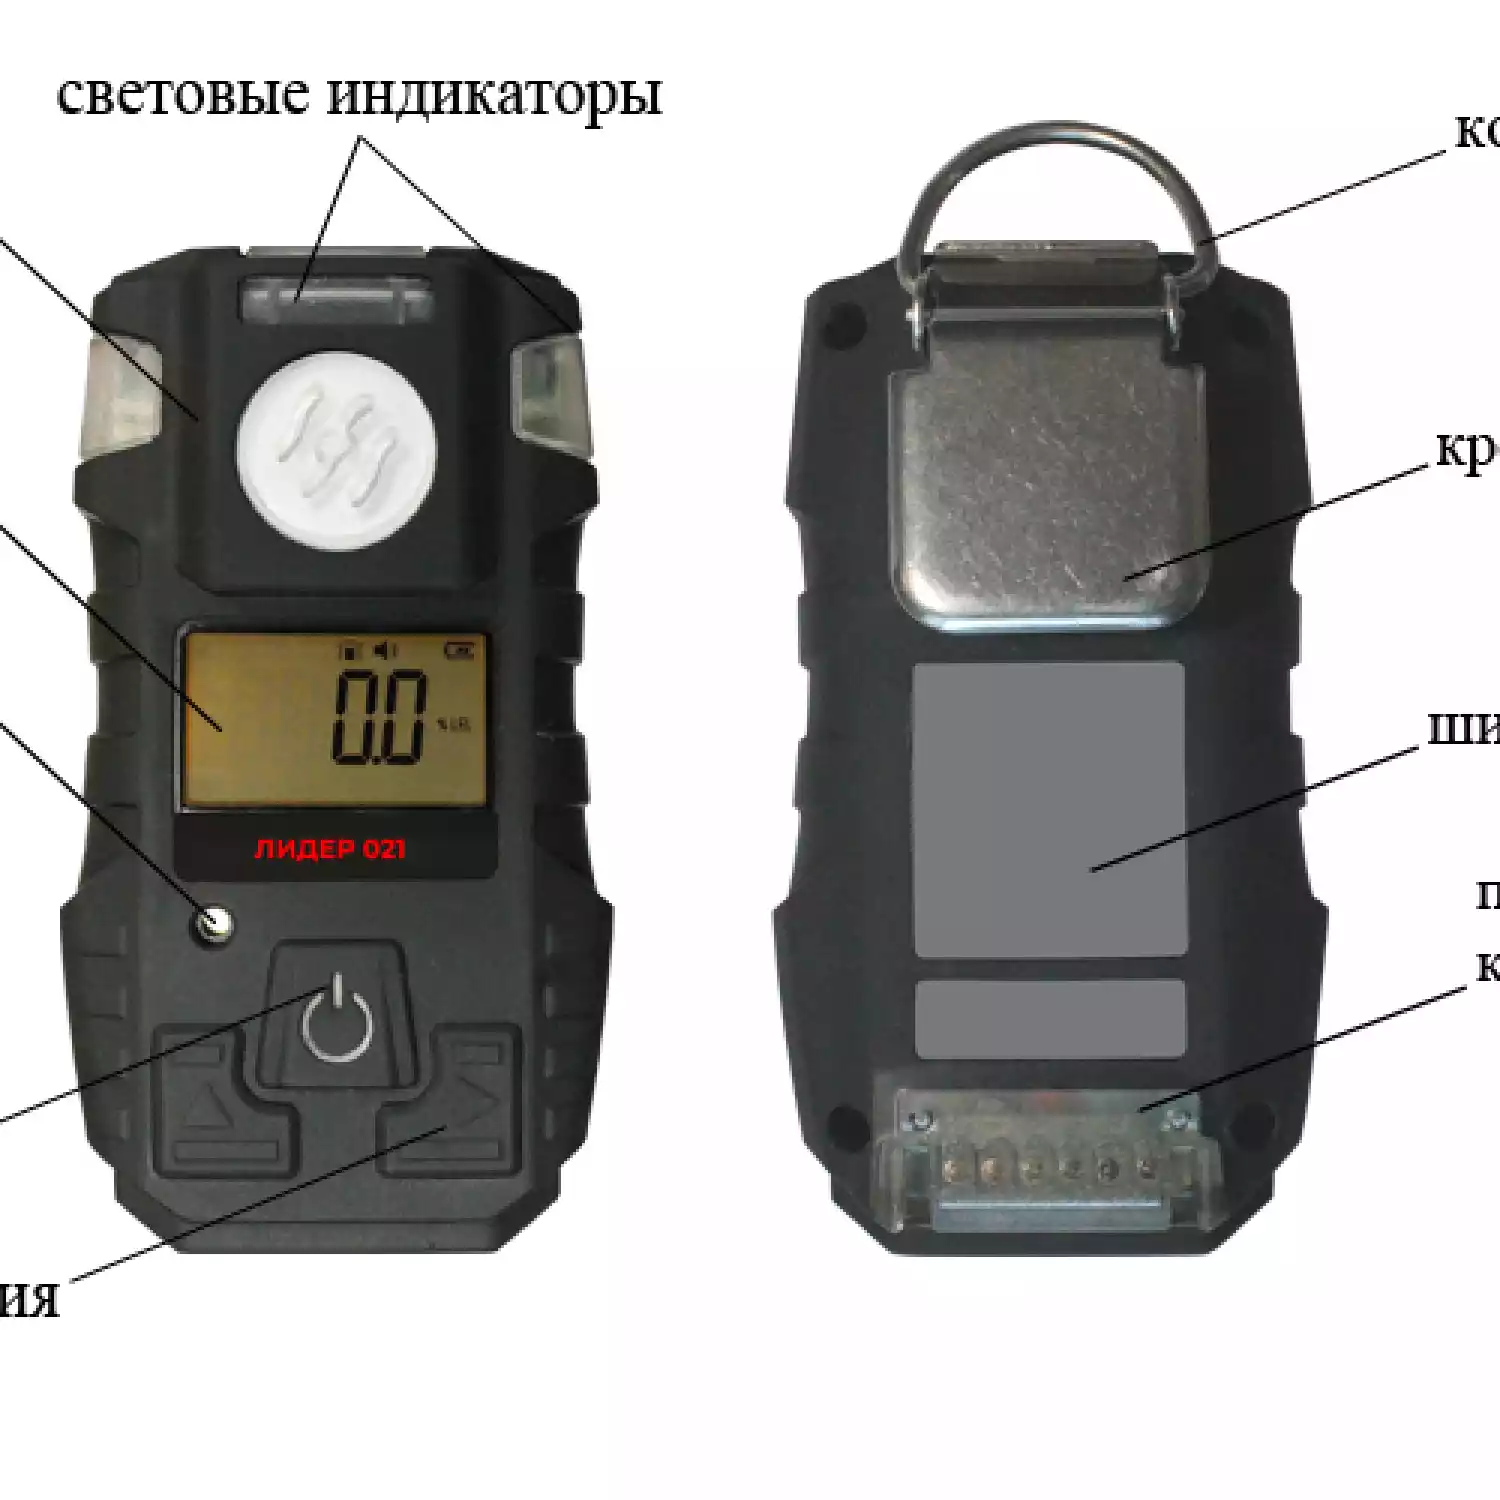 Газоанализатор портативный ЛИДЕР 021 (H2S) - 4